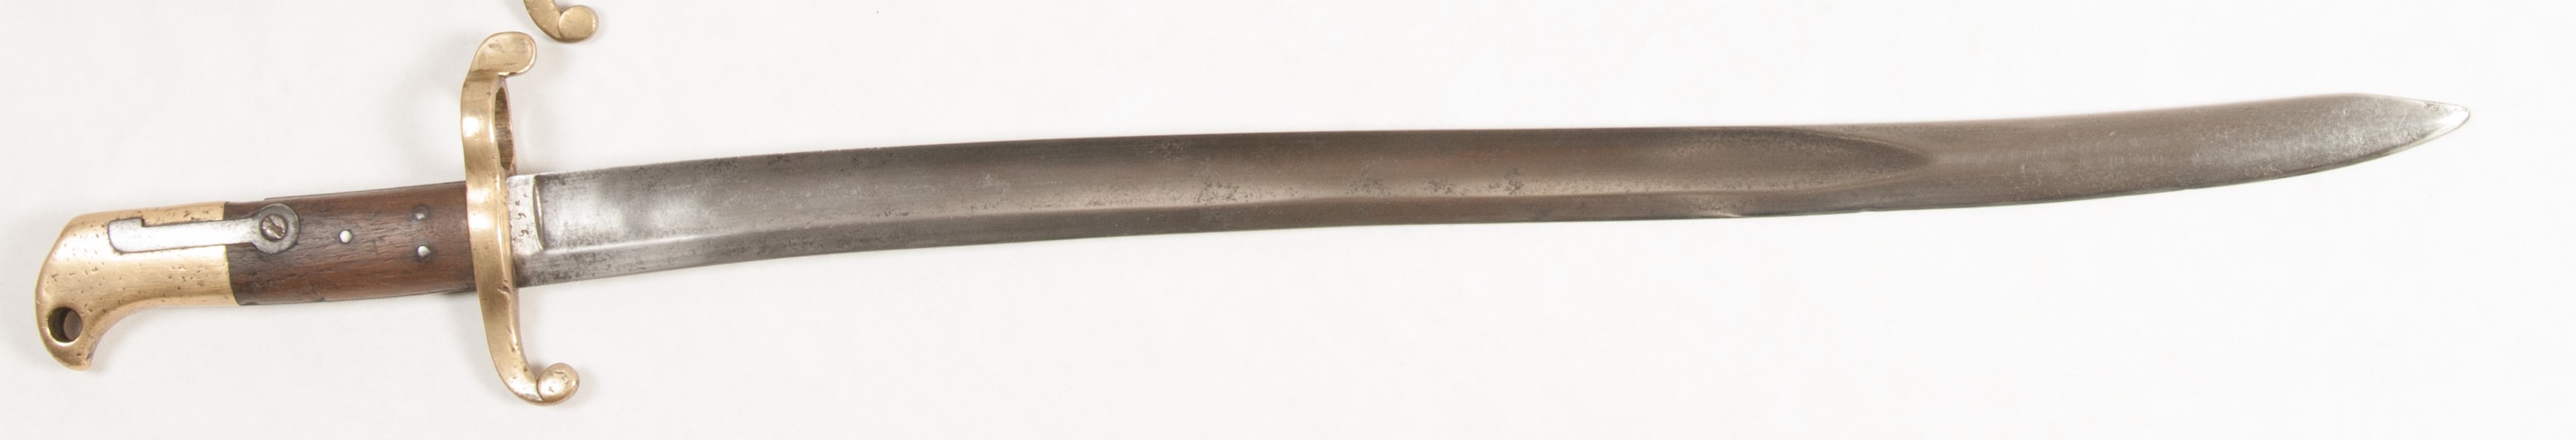 ./guns/bajonett/bilder/Blank-Kongsberg-Sabelbajonett-M1857-Modell-III-1.jpg